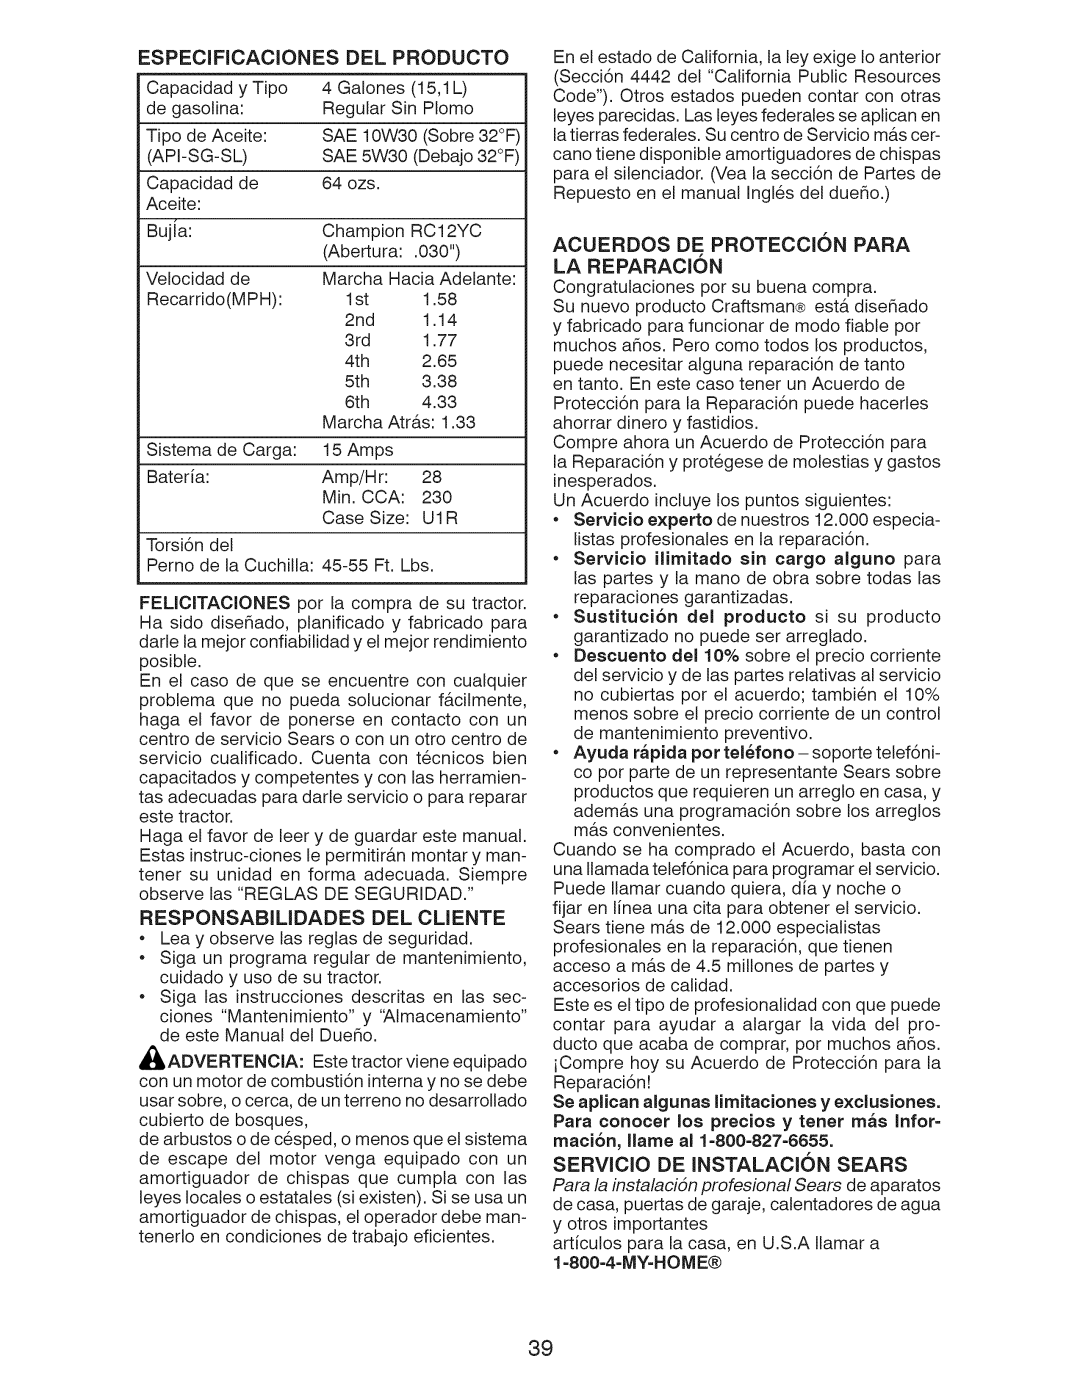 Craftsman 917.28955 owner manual LA REPARAClON, Producto 